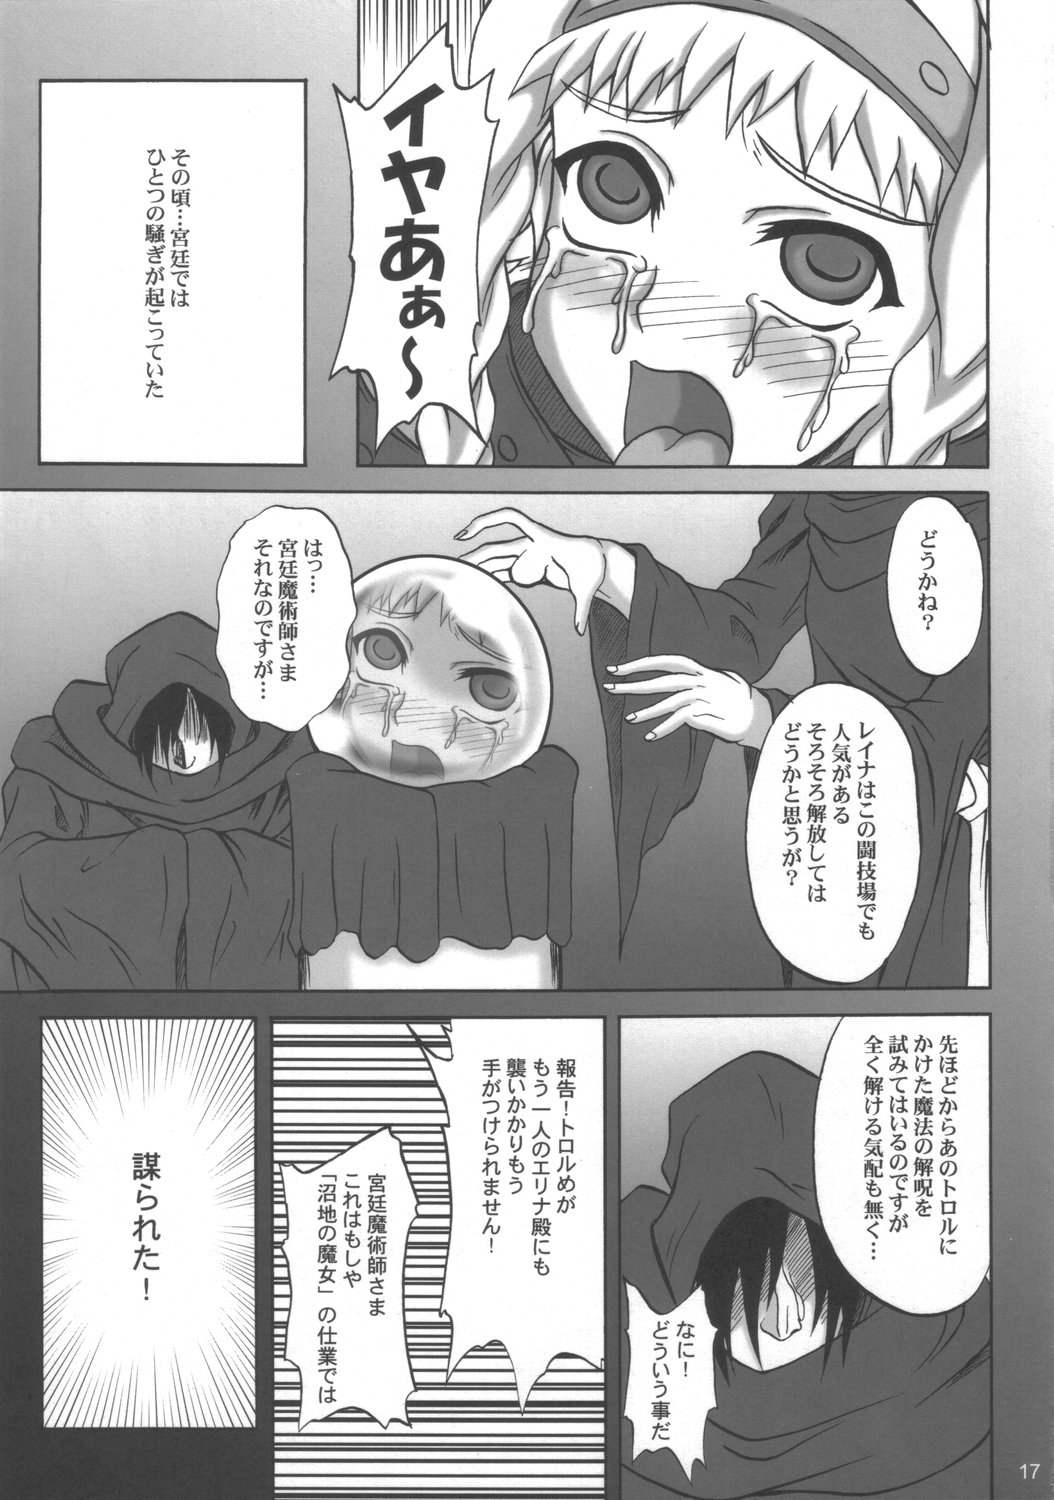 (SC33) [Anglachel (Yamamura Natsuru)] Injoku no Senshi Leina & Elina (Queen's Blade) page 16 full